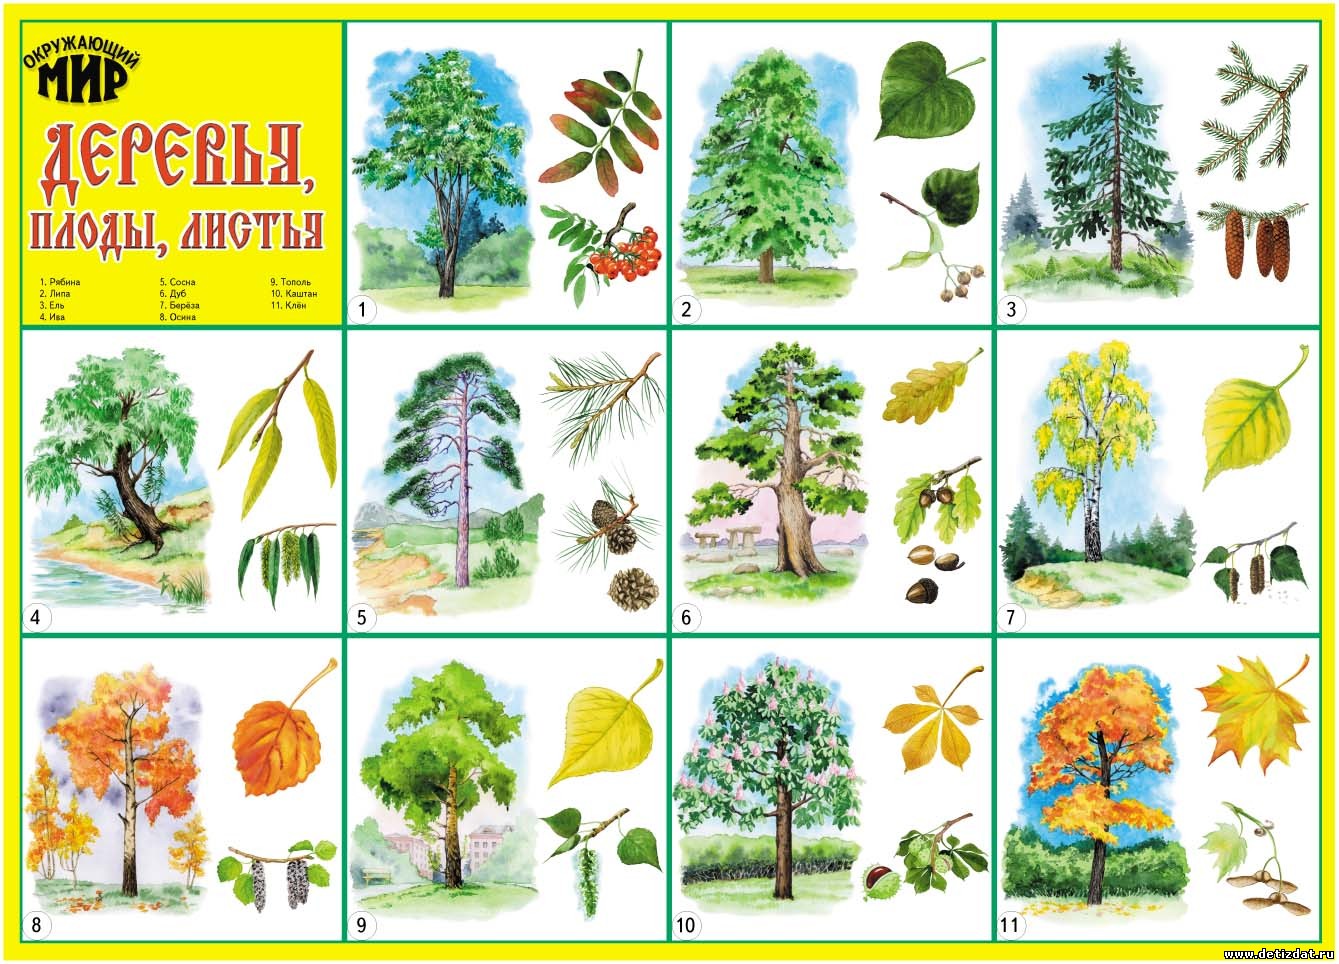 плоды и семена деревьев картинки с названиями